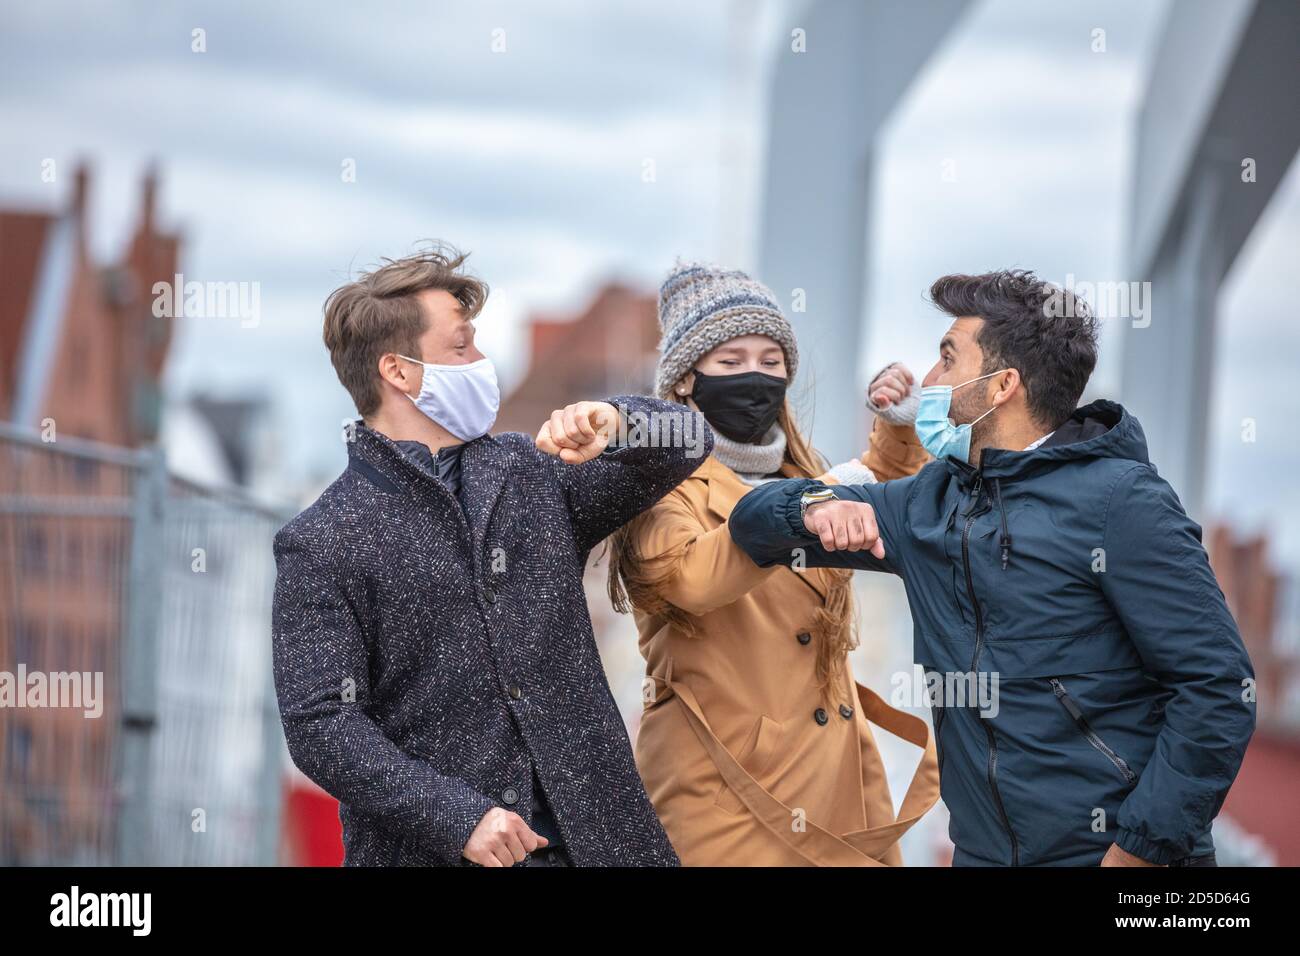 Zwei Männer und eine Frau begrüssen sich mit dem Ellenbogen. Corona-Zeit mit alltäglichen Masken in der kalten Jahreszeit in der Stadt. Stock Photo